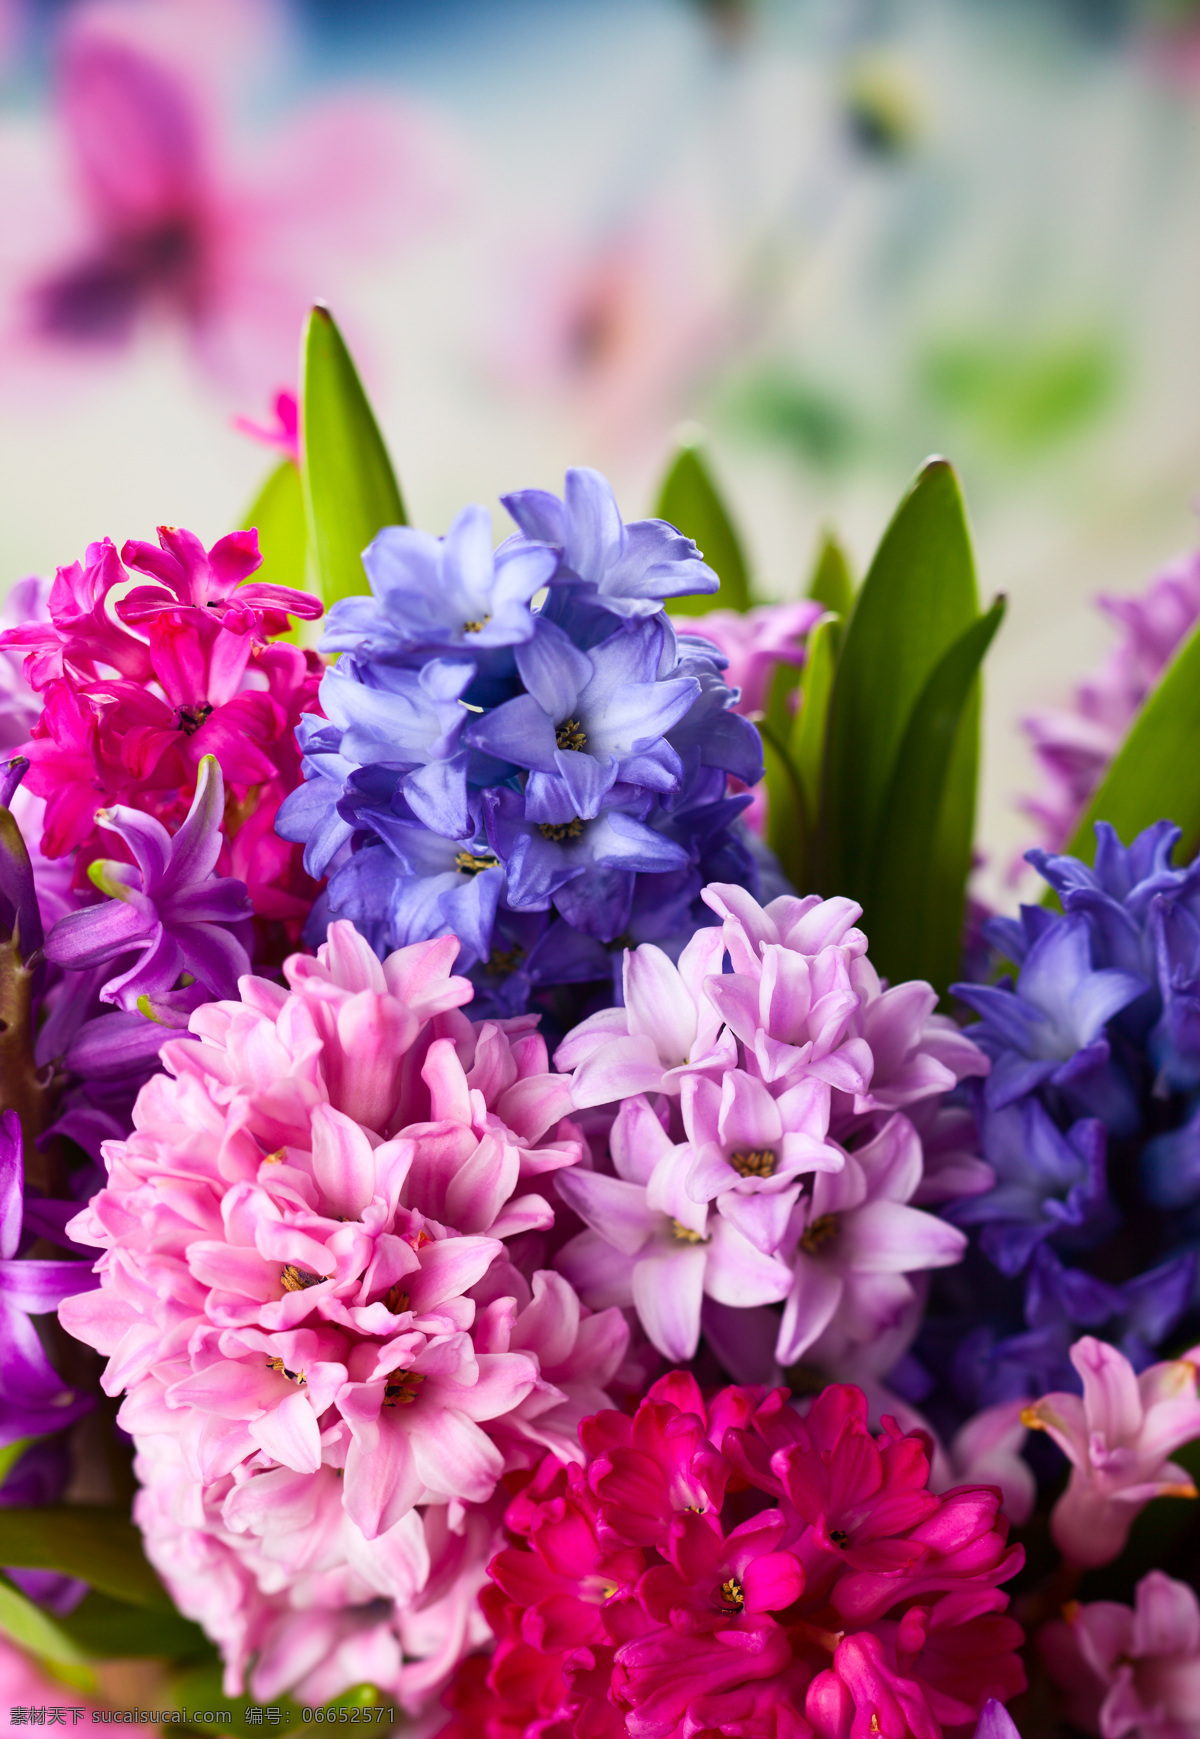 丁香花 彩色 彩色花朵 花卉 花朵 鲜花 唯美花朵 花草 植物 花 盛开 开放 开花 唯美 生物世界 紫丁香